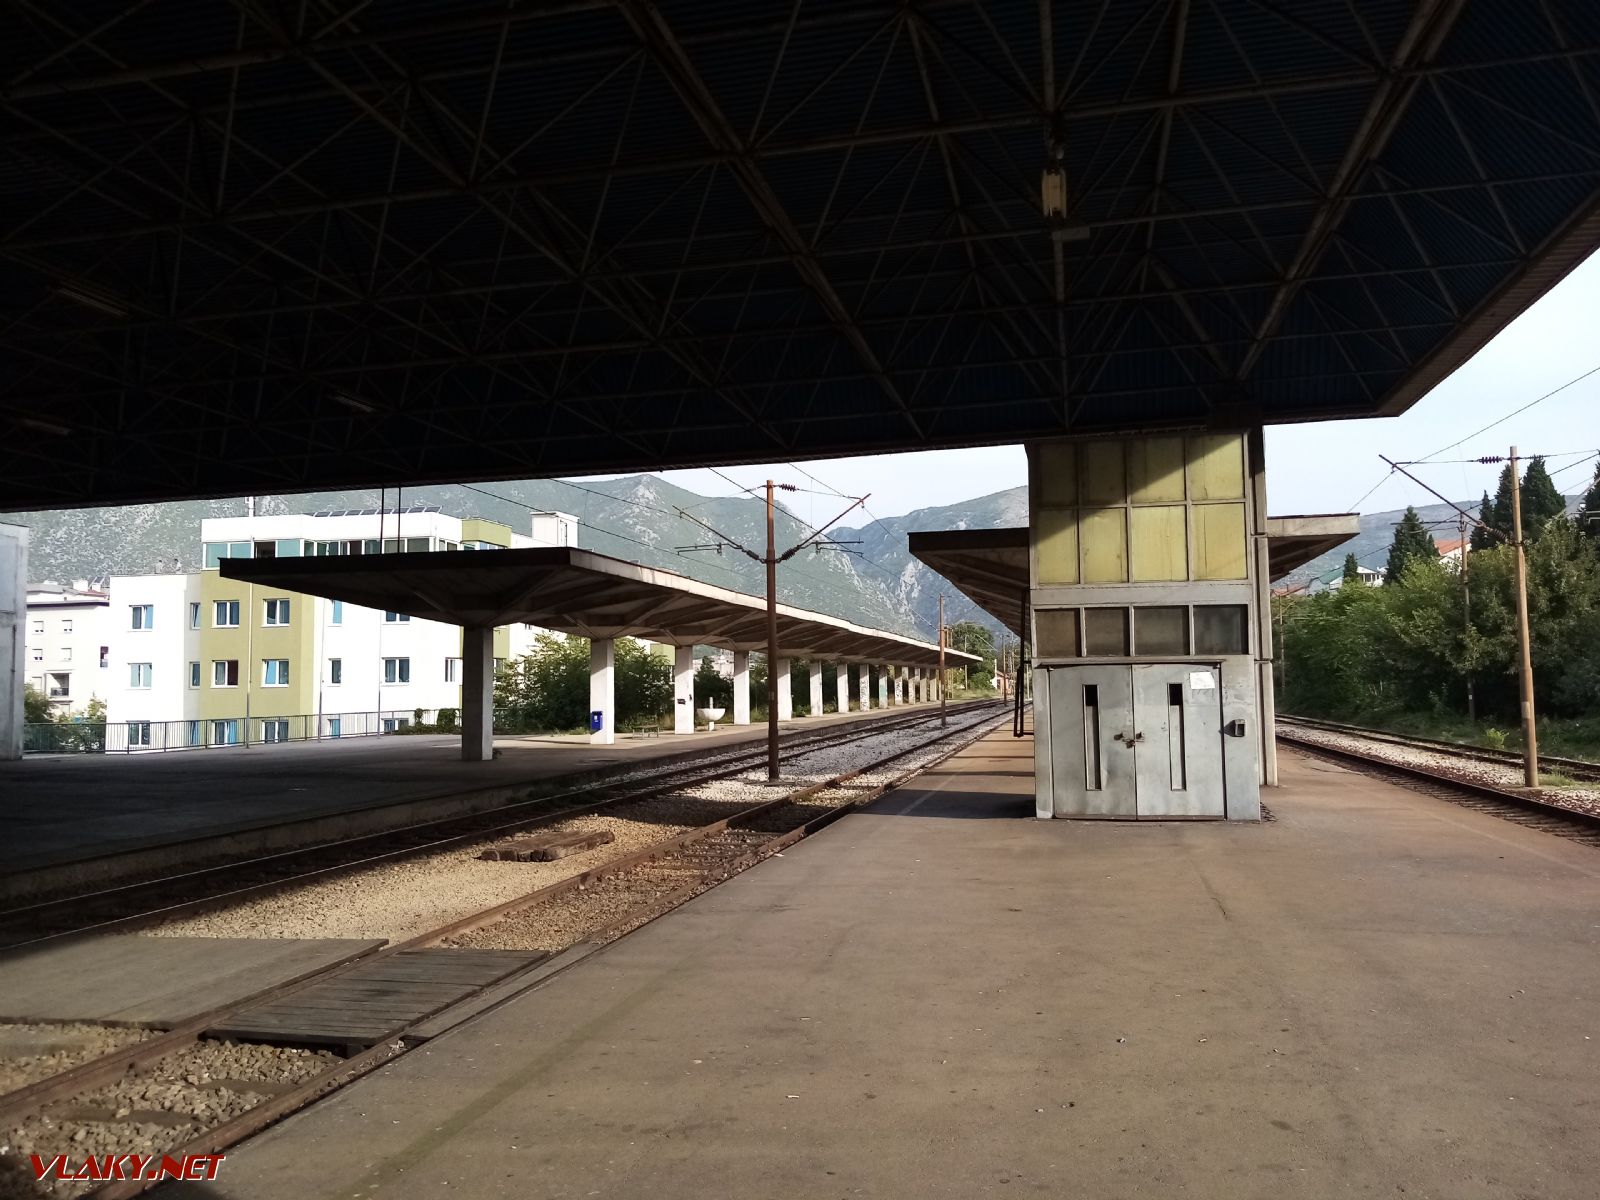 železničná stanica Mostar